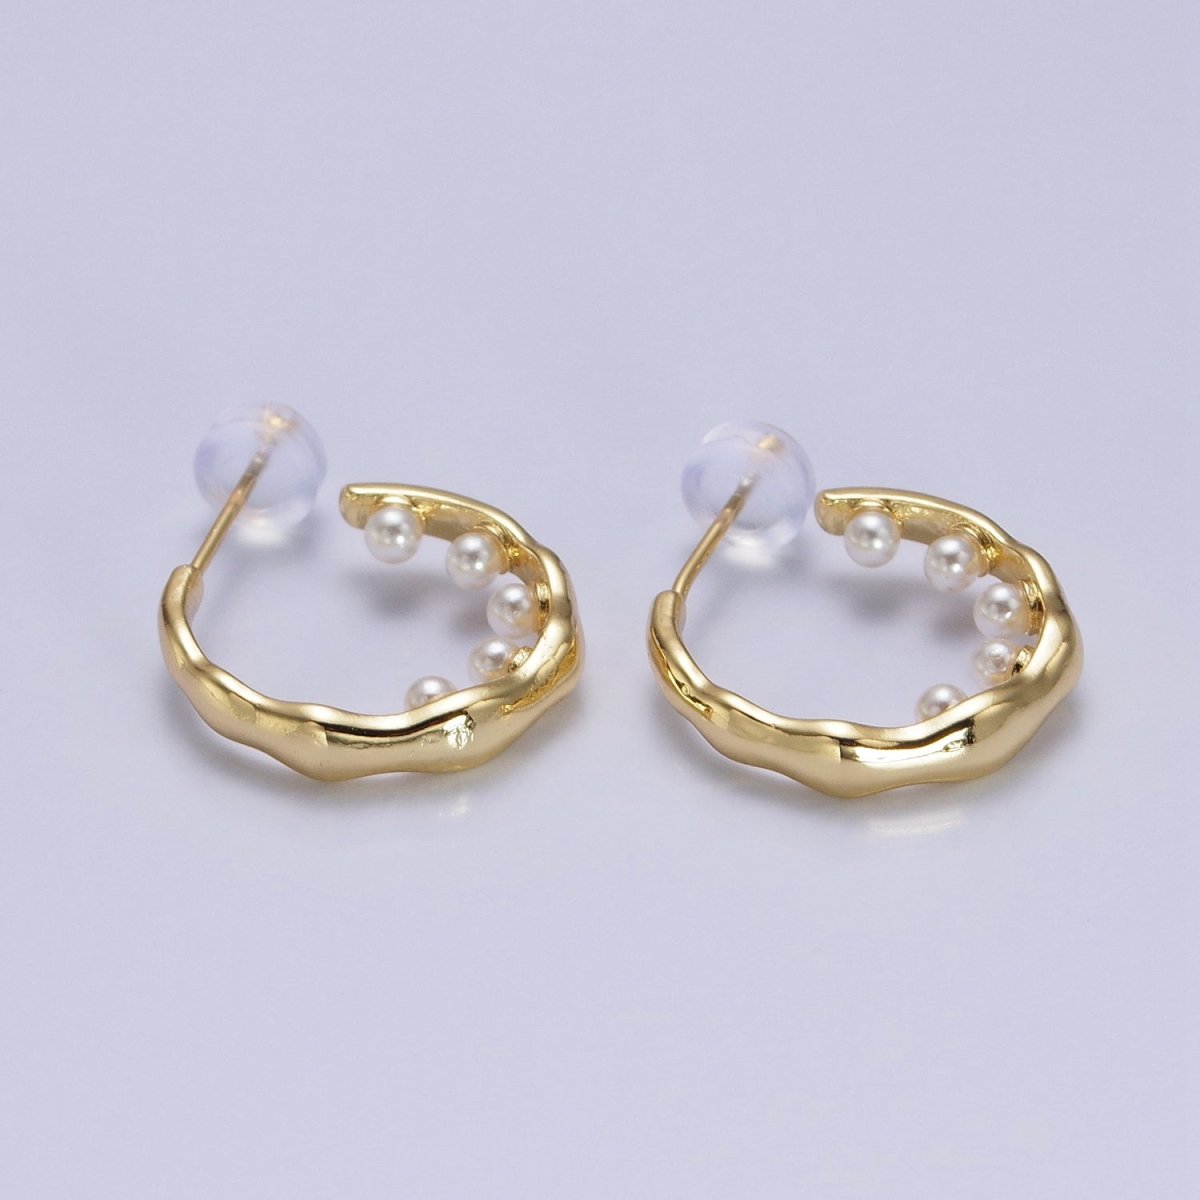 Pearl Hoop Earrings| Irregular Gold Hoop Earrings| Textured Hoop Earrings| Abstract Wavy Earrings Modern Statement Earrings AB195 - DLUXCA